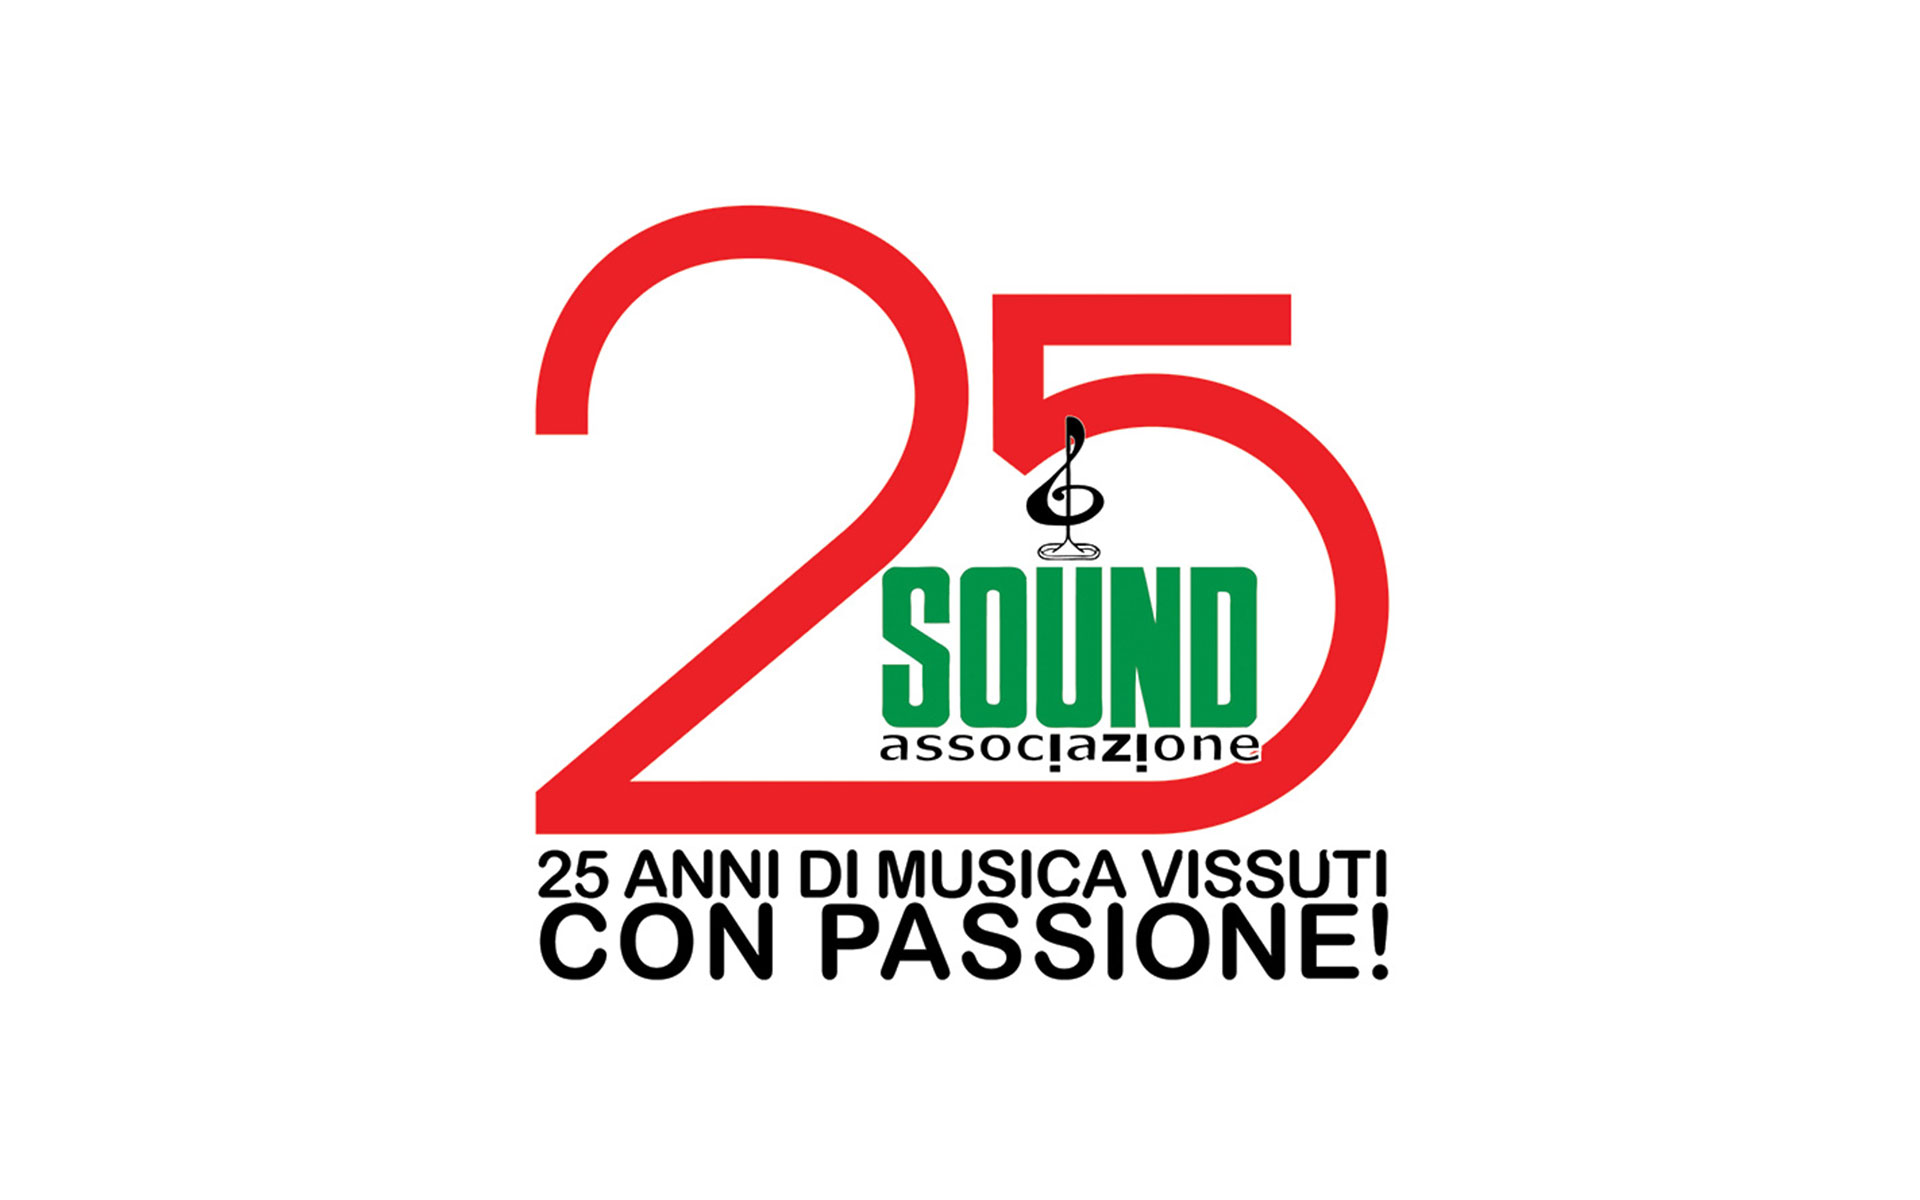 Franco Baggiani intervistato da Leonardo Canestrelli per i 25 anni della Associazione Sound